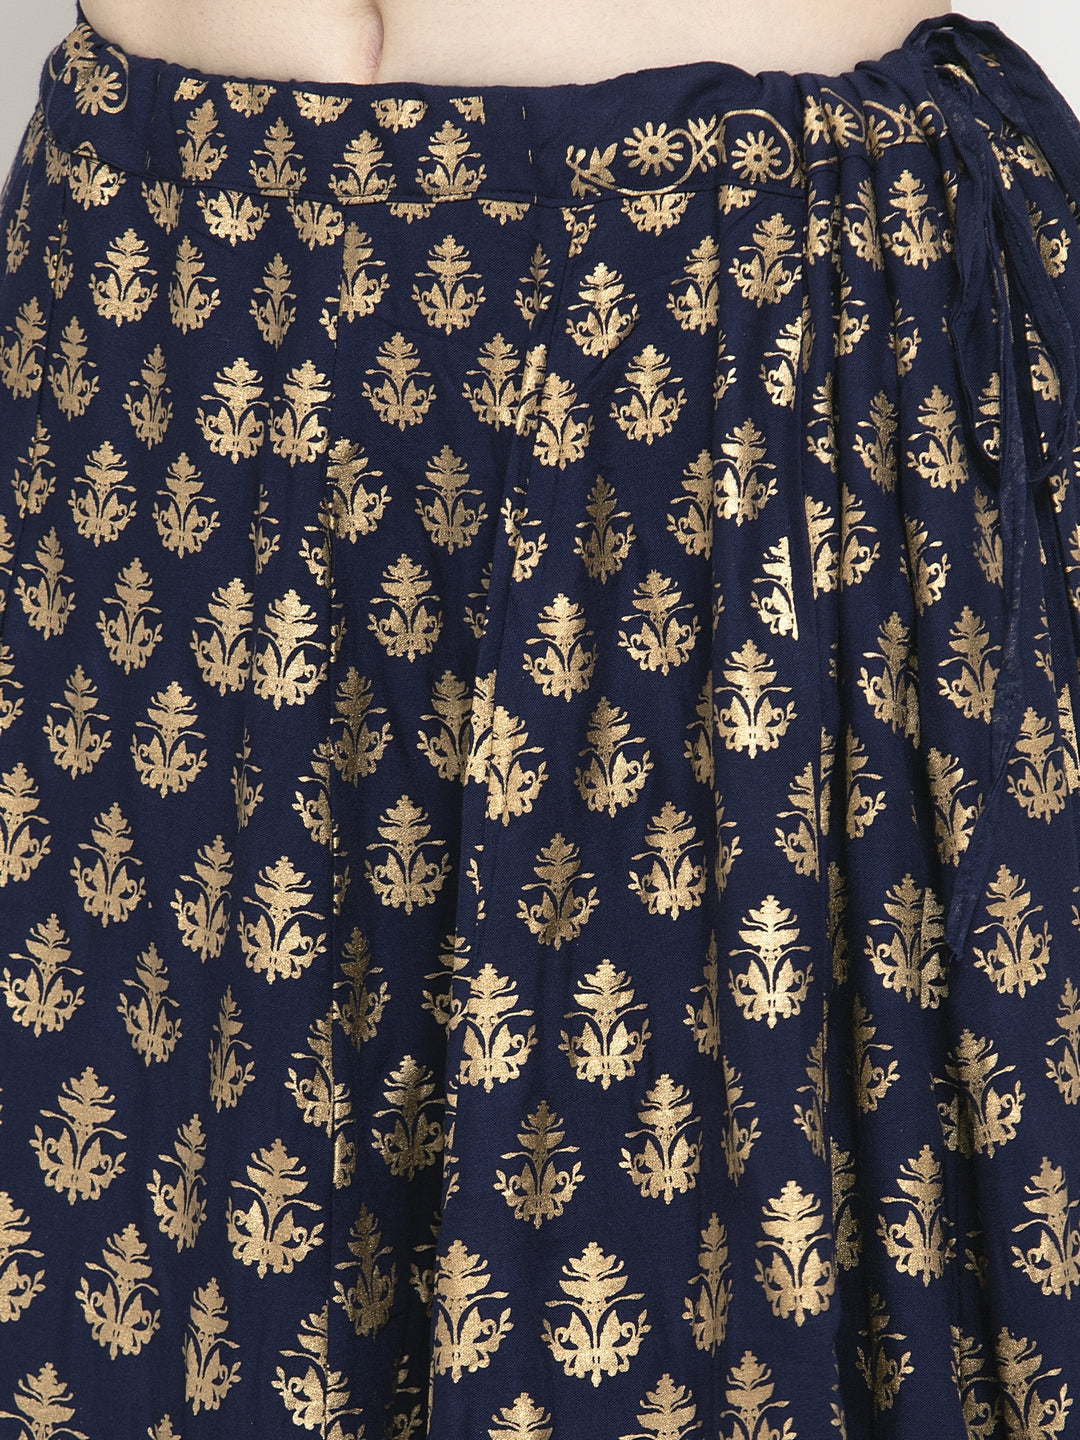 Women's Navy Blue Floral Printed Rayon Skirt - Wahe-NOOR